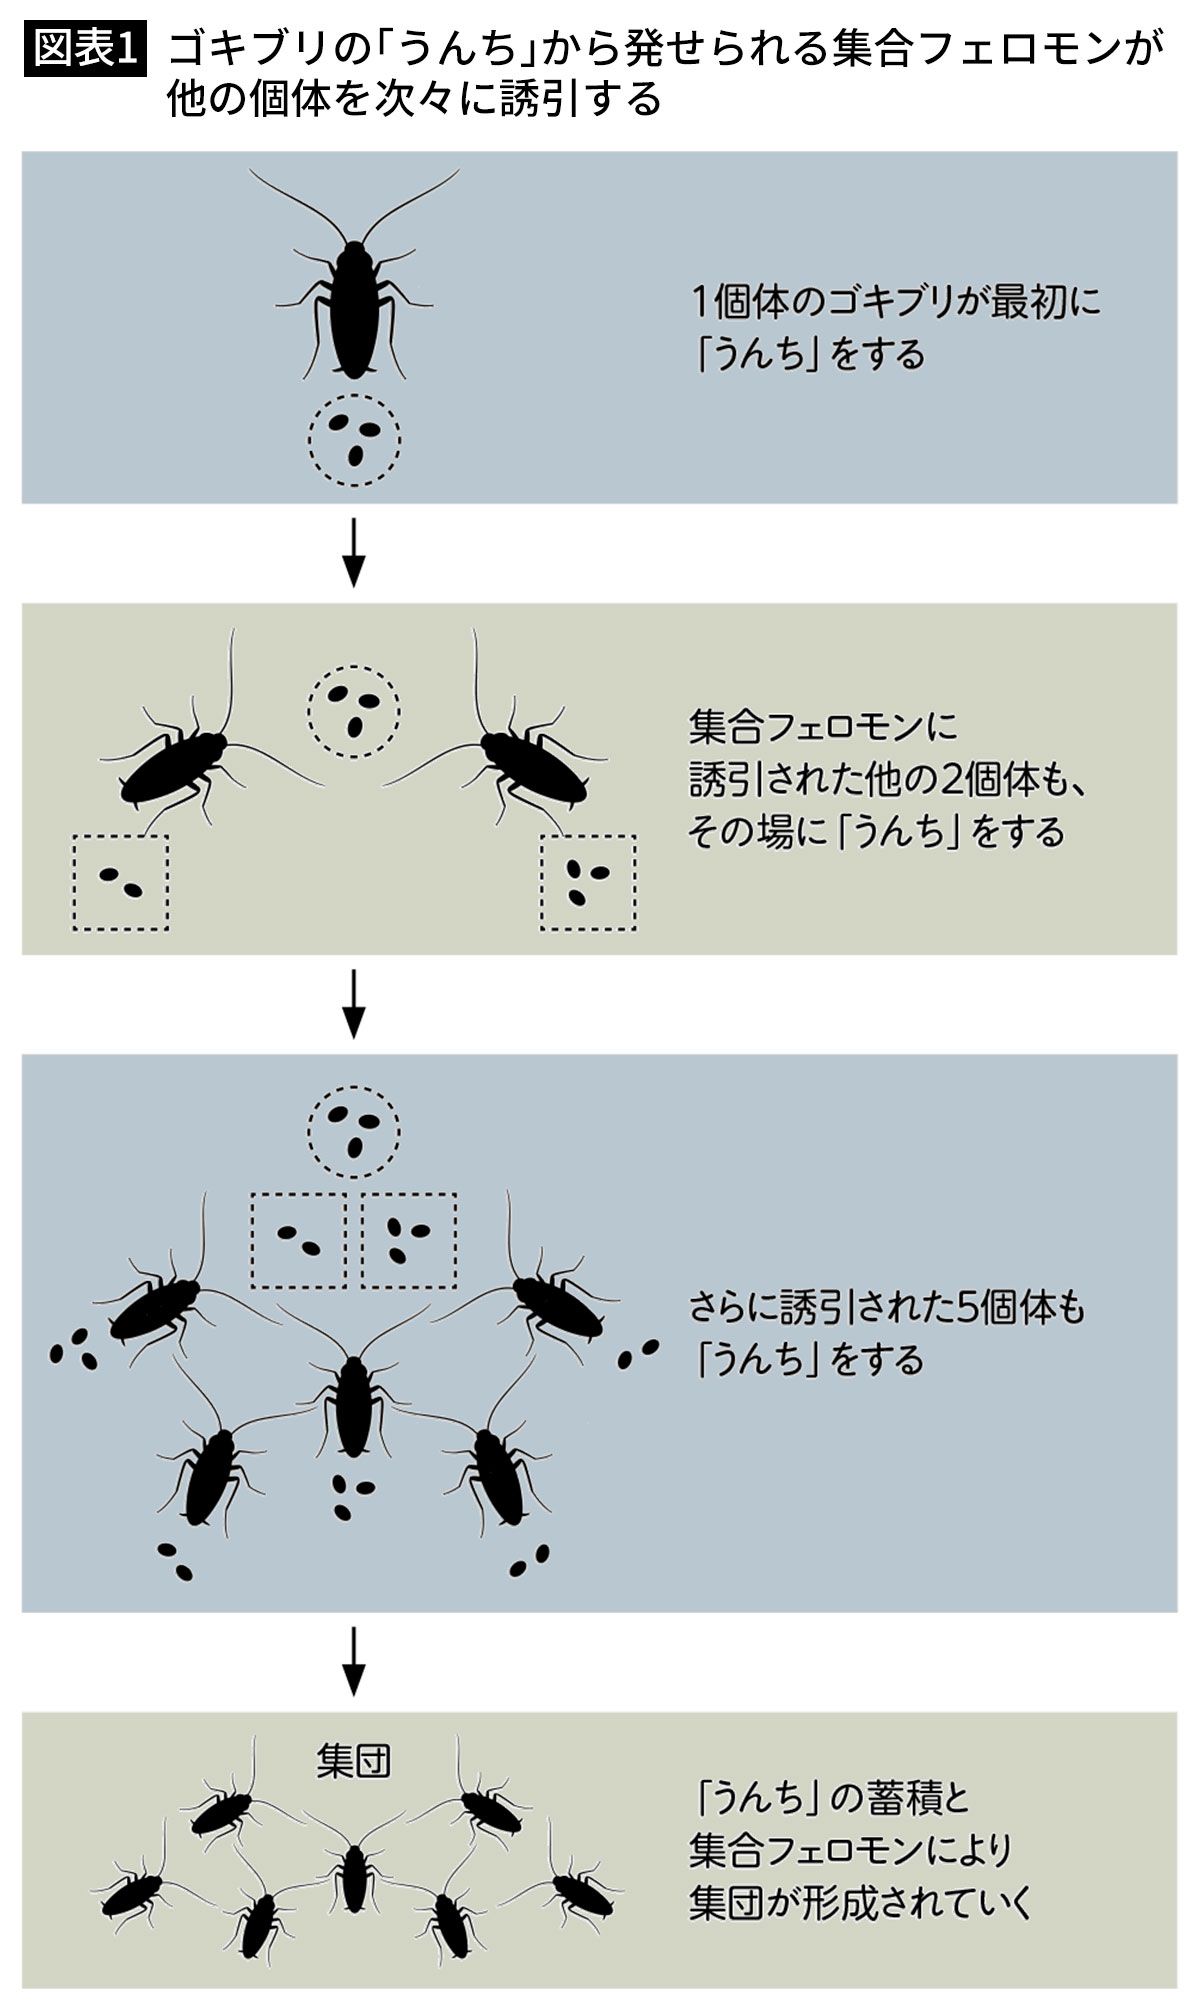 【図表1】ゴキブリの「うんち」から発せられる集合フェロモンが他の個体を次々に誘引する